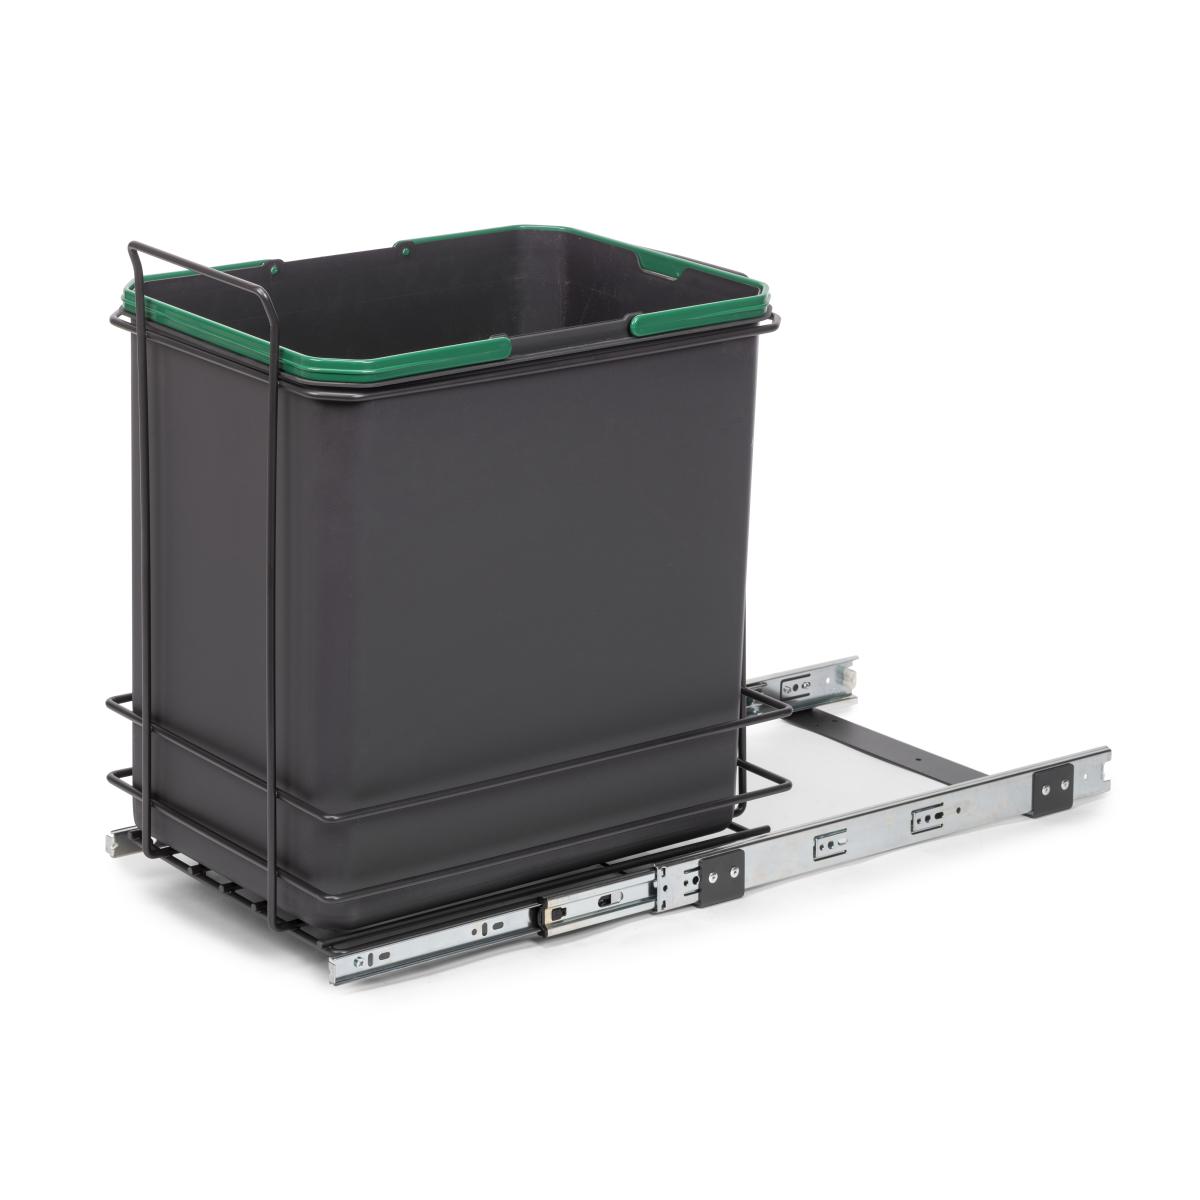 Contenedor de reciclaje Recycle de 35 L para cocina, fijación inferior y extracción manual